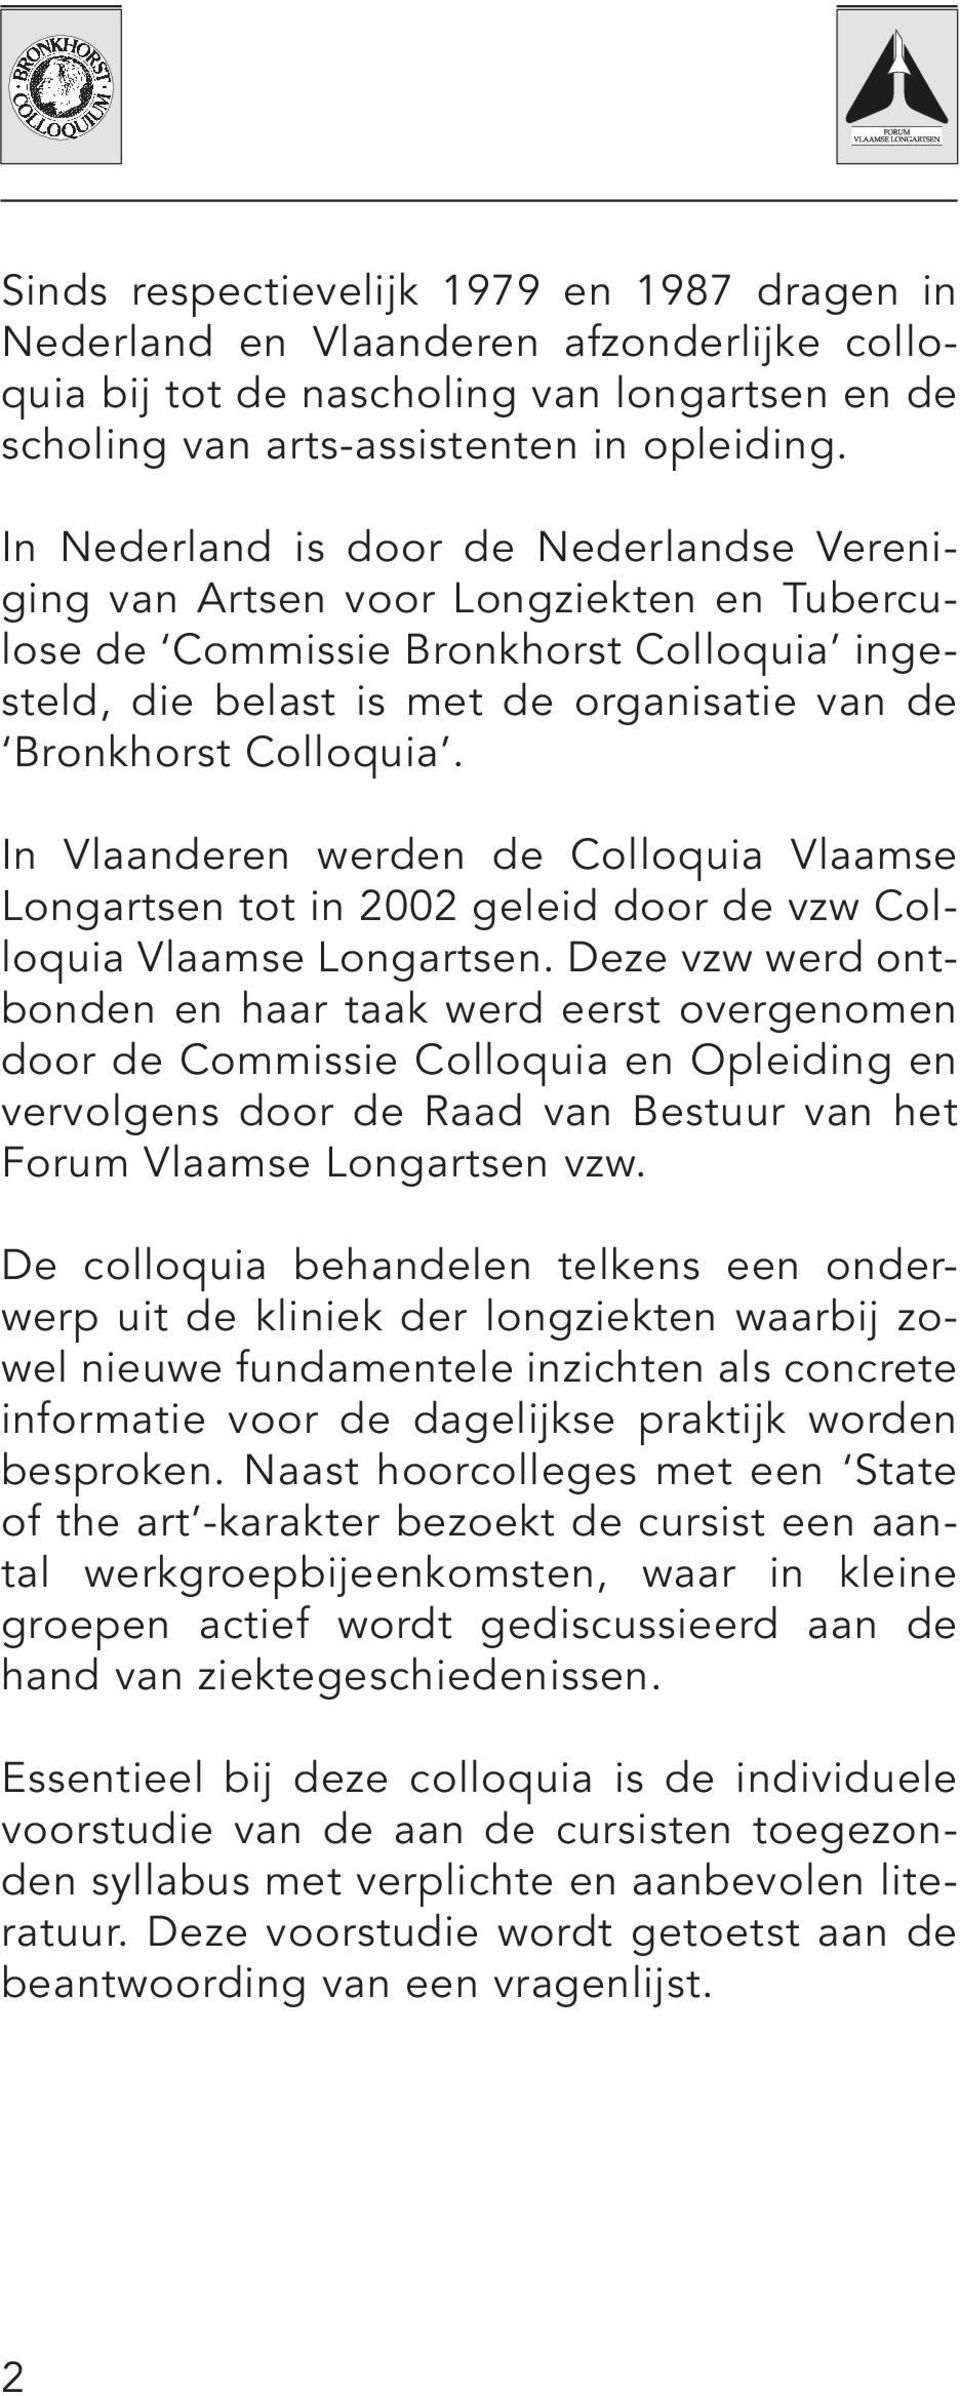 In Vlaanderen werden de Colloquia Vlaamse Longartsen tot in 2002 geleid door de vzw Colloquia Vlaamse Longartsen.